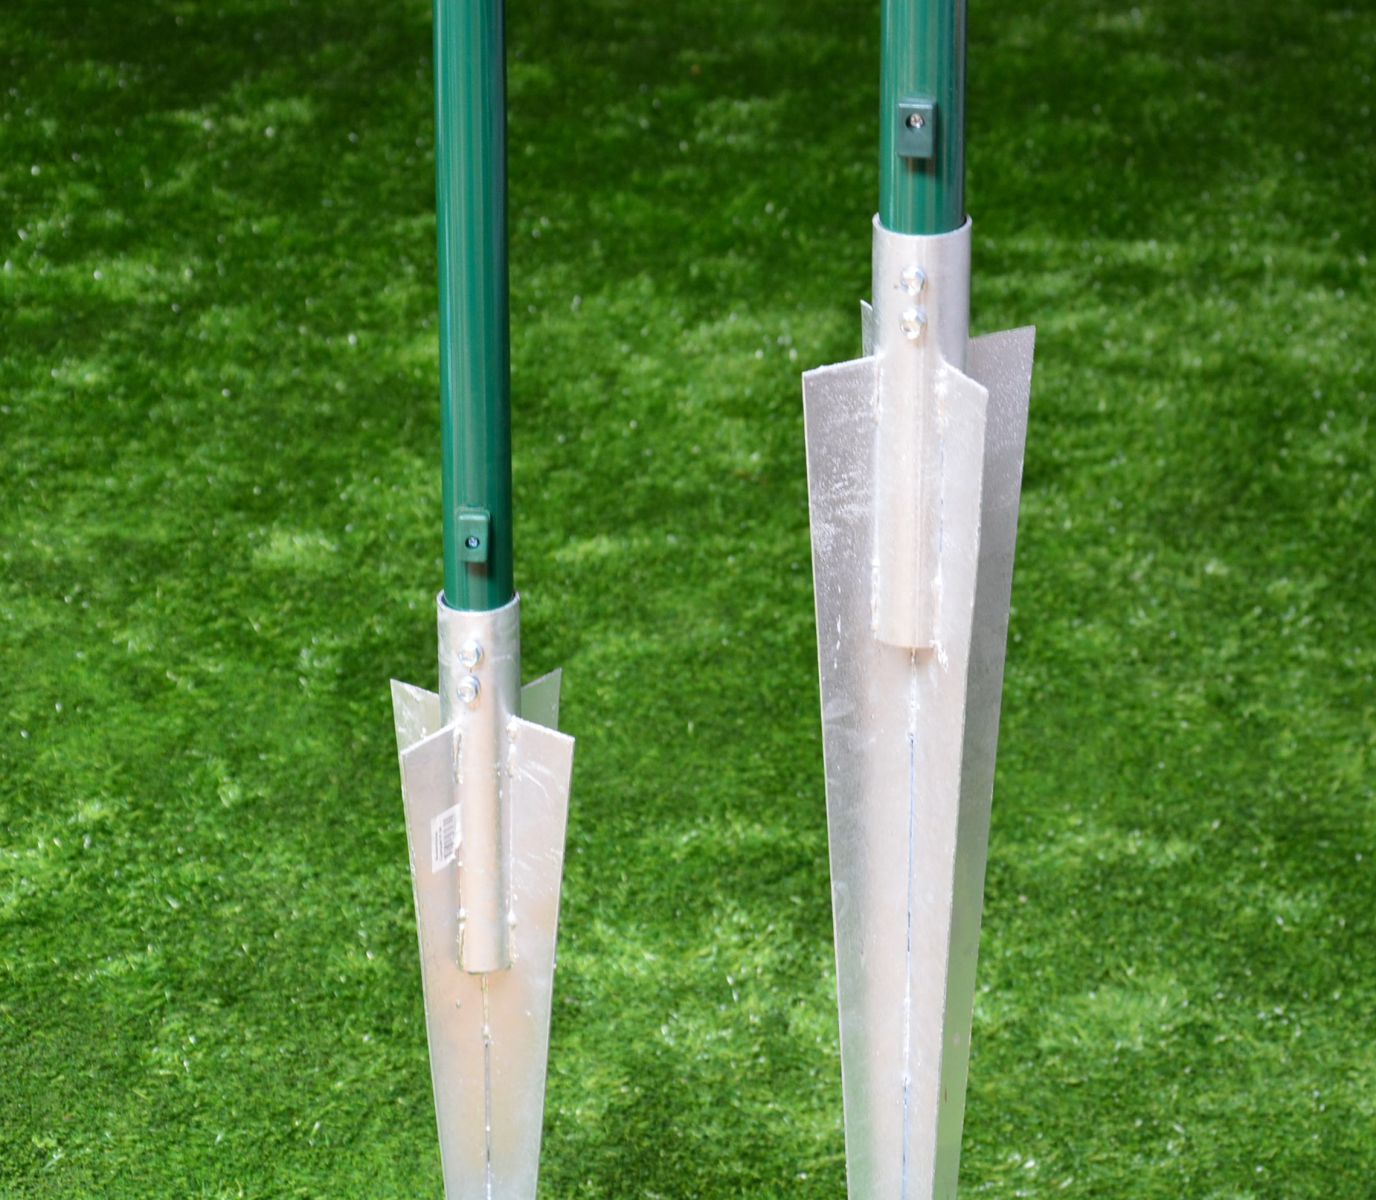 Bodenhülse-Einschlaghülse-Pfostenträger Typ COMPACT für Pfosten 38 mm Ø